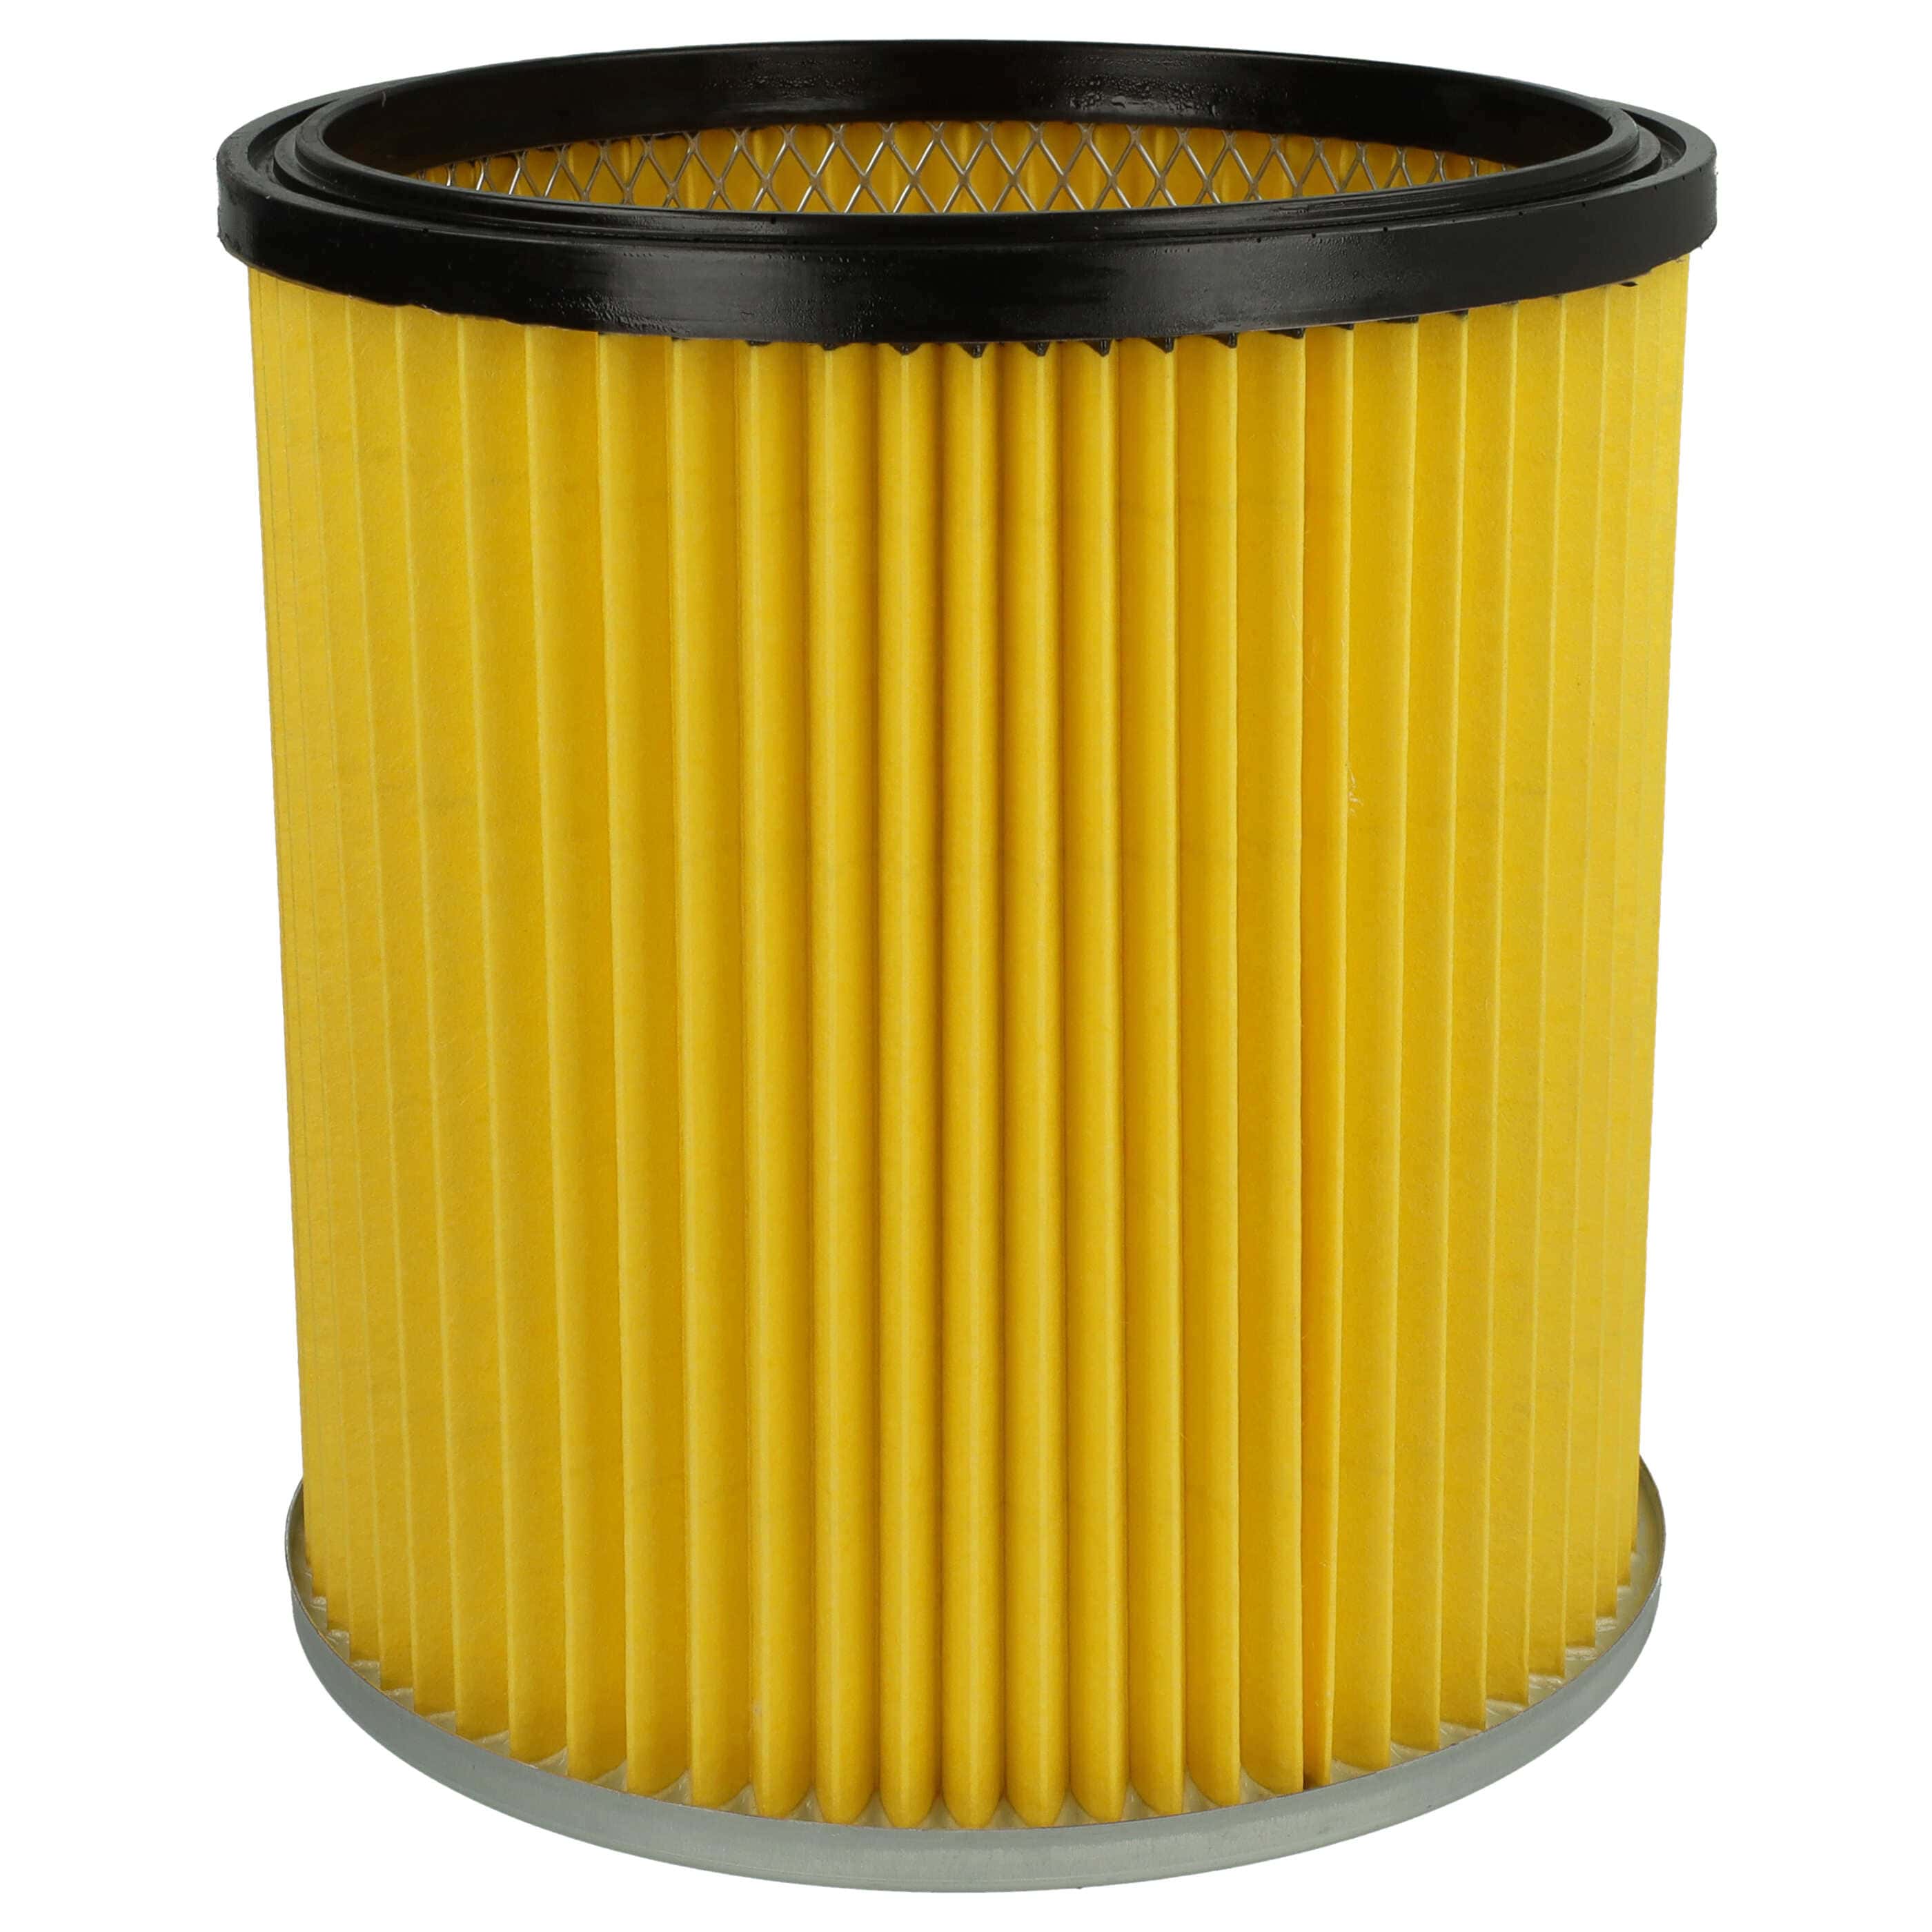 Filtr do odkurzacza Dewalt zamiennik Kärcher 6.414-354.0, 6.414-335.0 - wkład filtracyjny, żółty